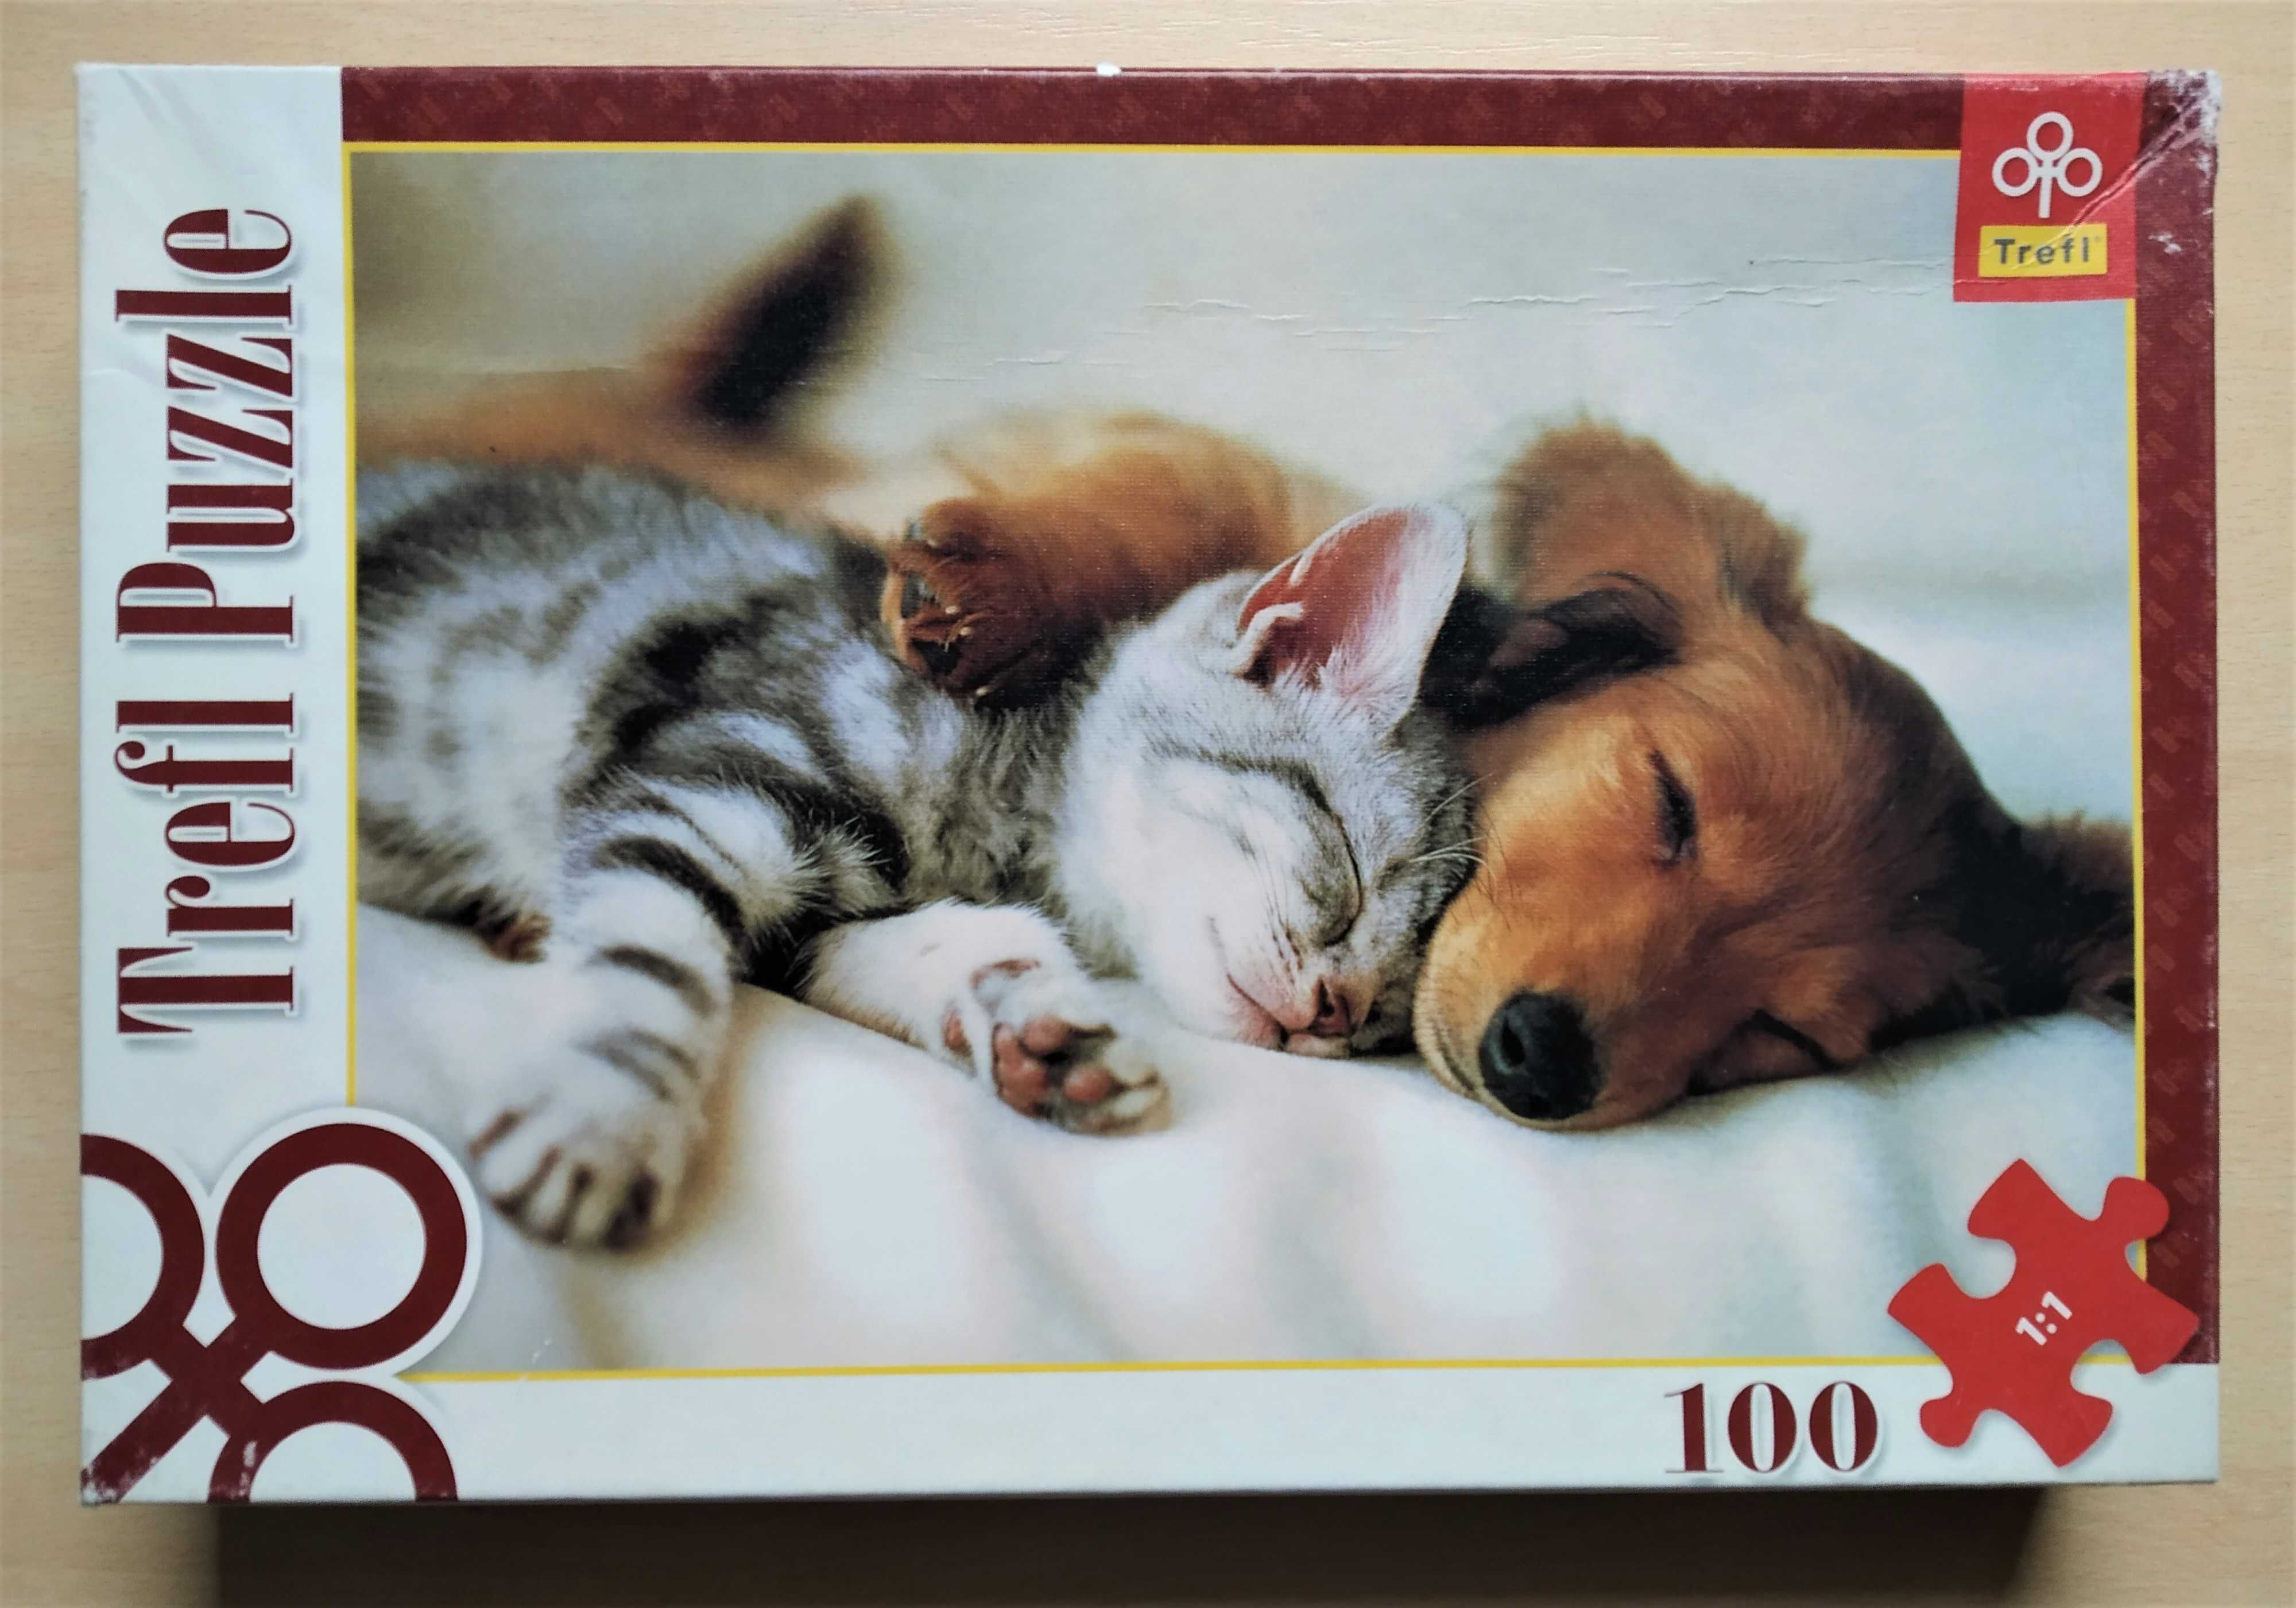 Trefl Puzzle - "Śpiące zwierzaki" - 100 elementów